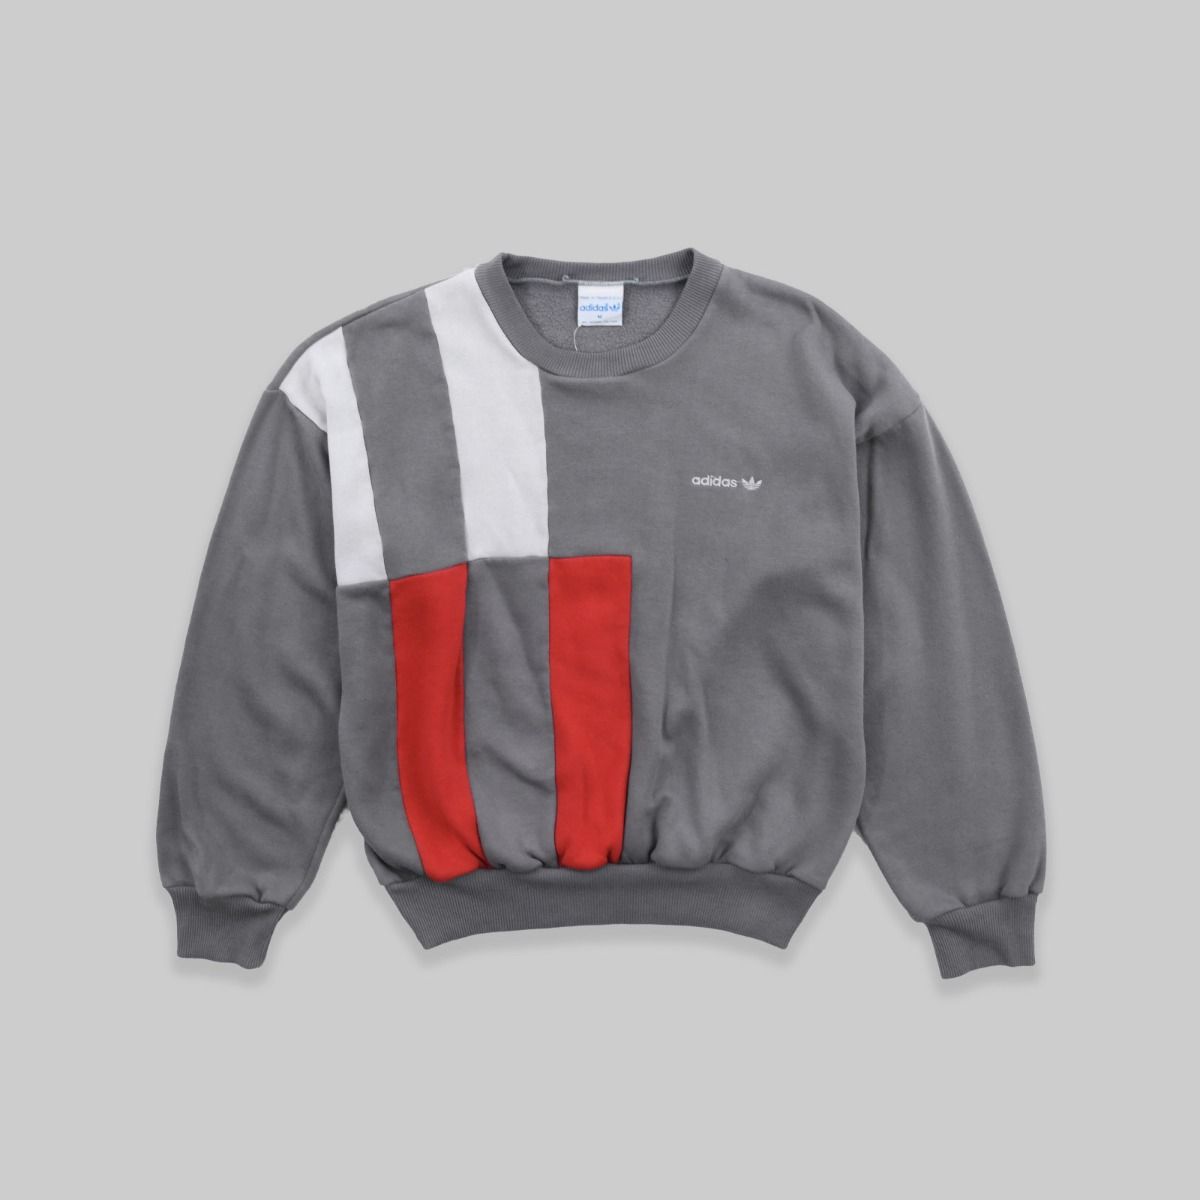 Adidas 1980s Sweatshirt